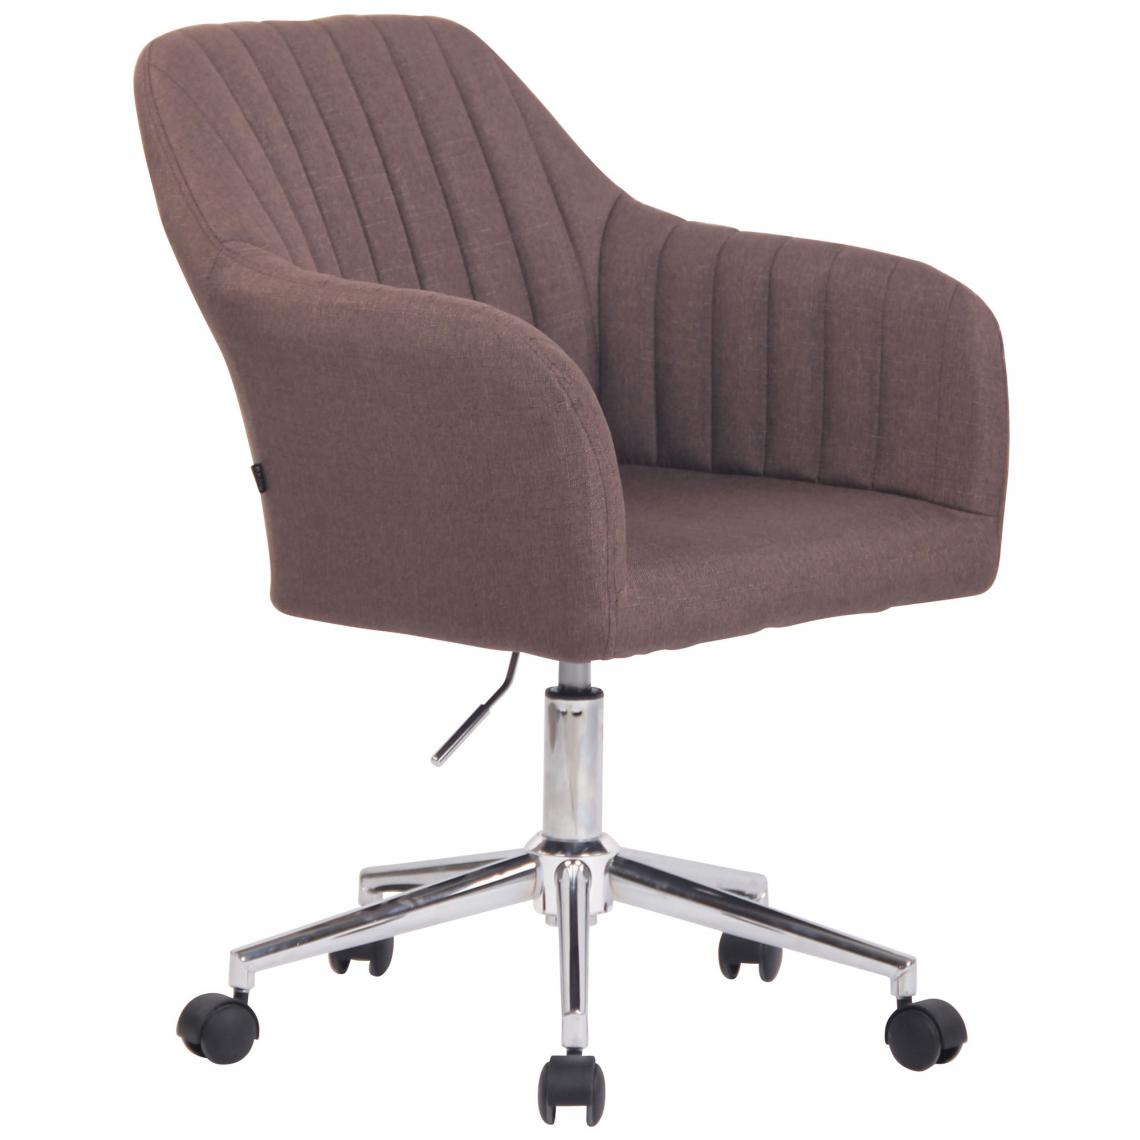 Icaverne - Contemporain Chaise de bureau en tissu ligne Moroni couleur marron - Chaises